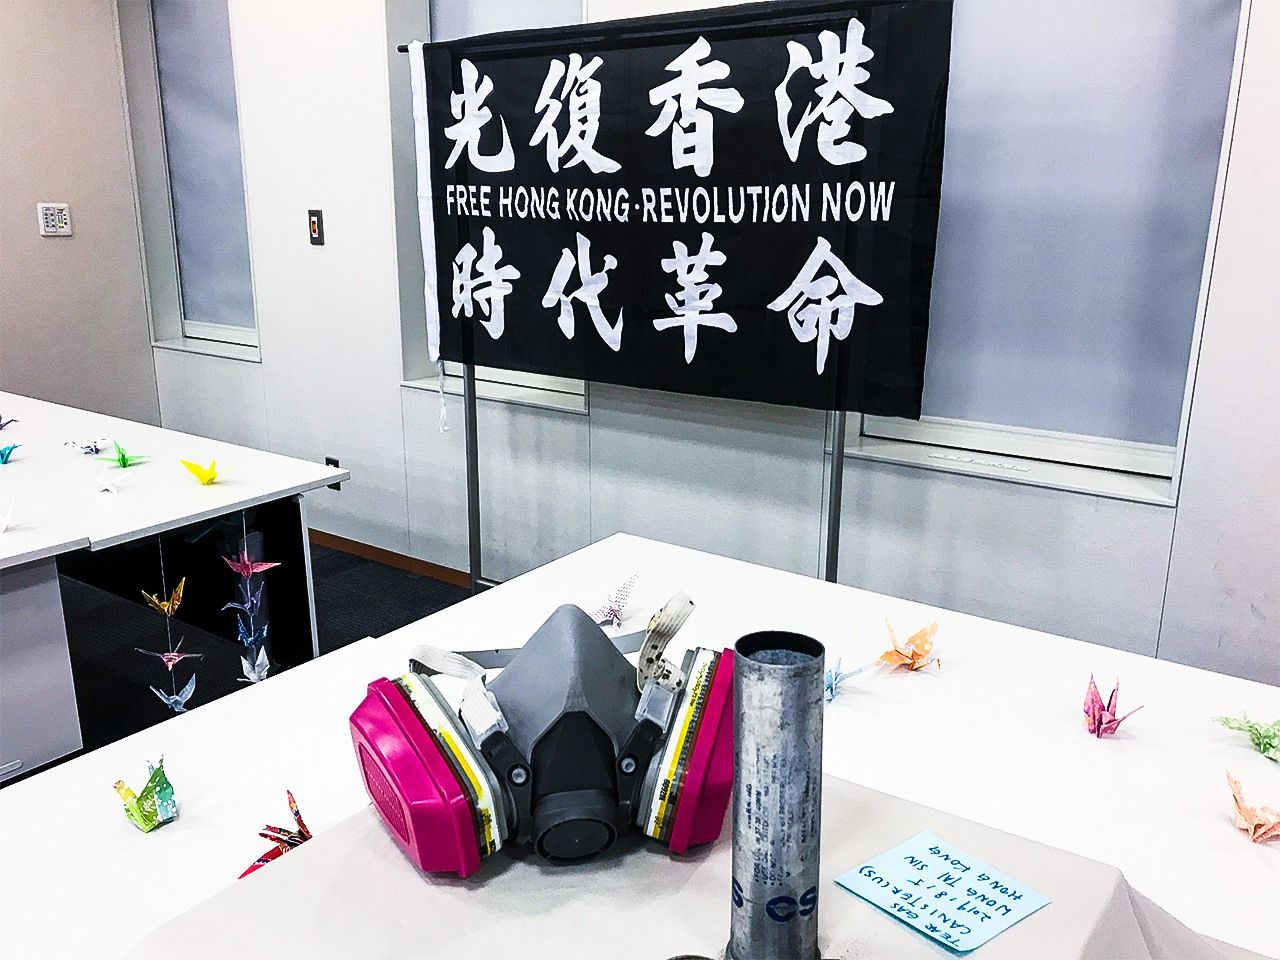 مشهد من ندوة ”التضامن العالمي“ التي عقدت في طوكيو. وشملت المعروضات في المكان أقنعة الغاز التي استخدمها المتظاهرون، وعبوات الغاز المسيل للدموع الفارغة.